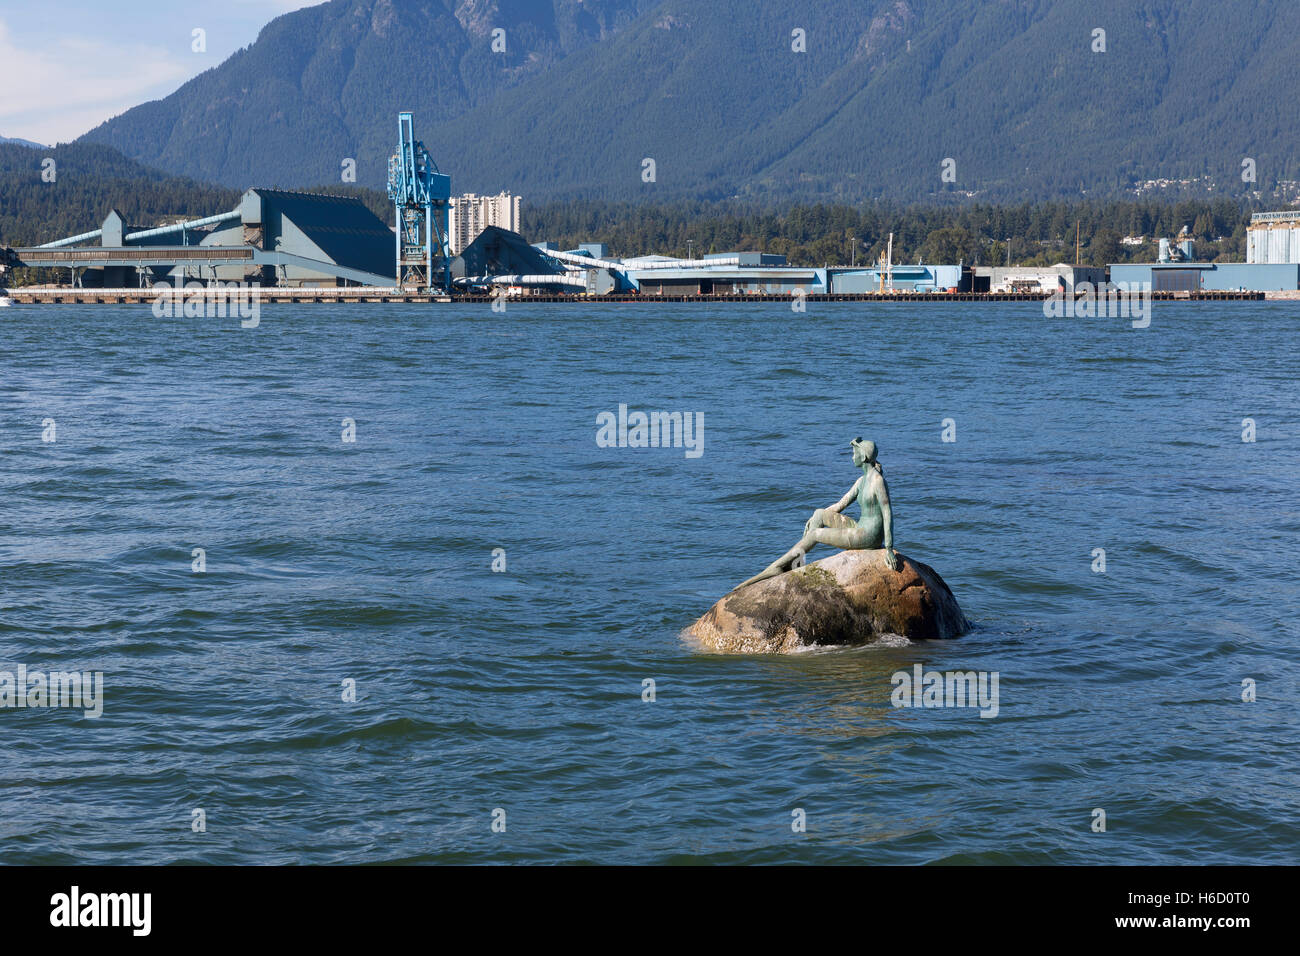 Vancouver, Kanada: "Mädchen in einen Neoprenanzug" des Bildhauers Elek Imredy montiert auf einem Felsen im Hafen von Vancouver. Stockfoto